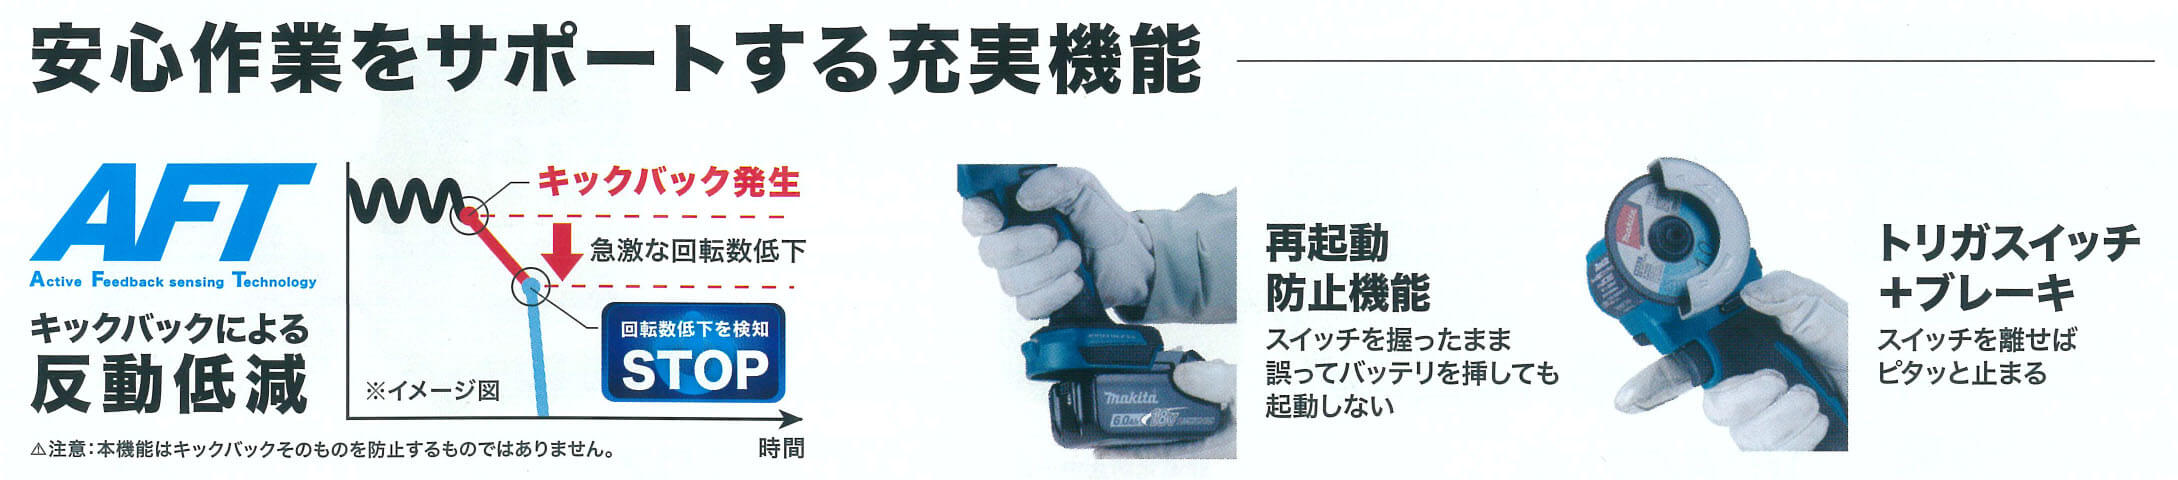 マキタ MC300DZ 18V 76mm充電式コンパクトカッタ ウエダ金物【公式サイト】